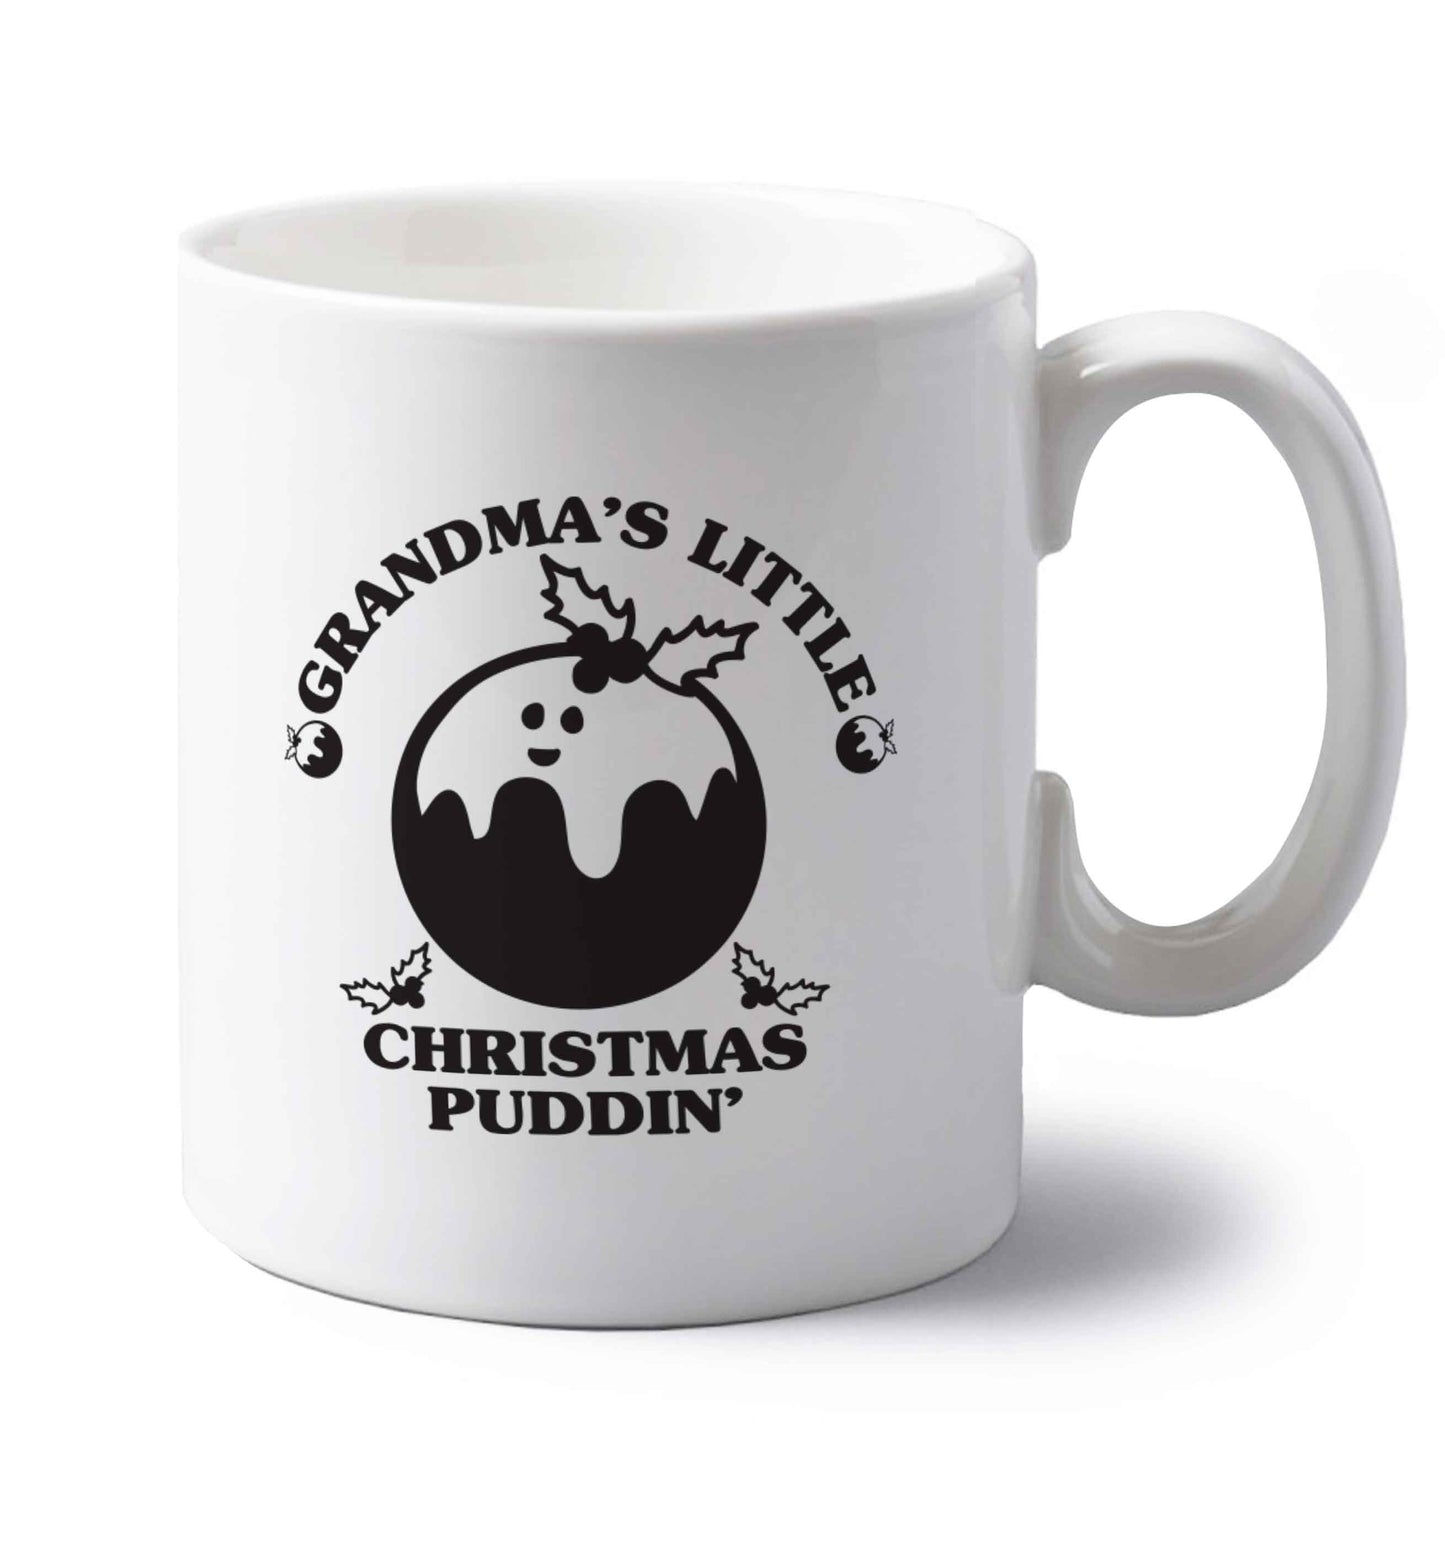 Grandma's little Christmas puddin' left handed white ceramic mug 